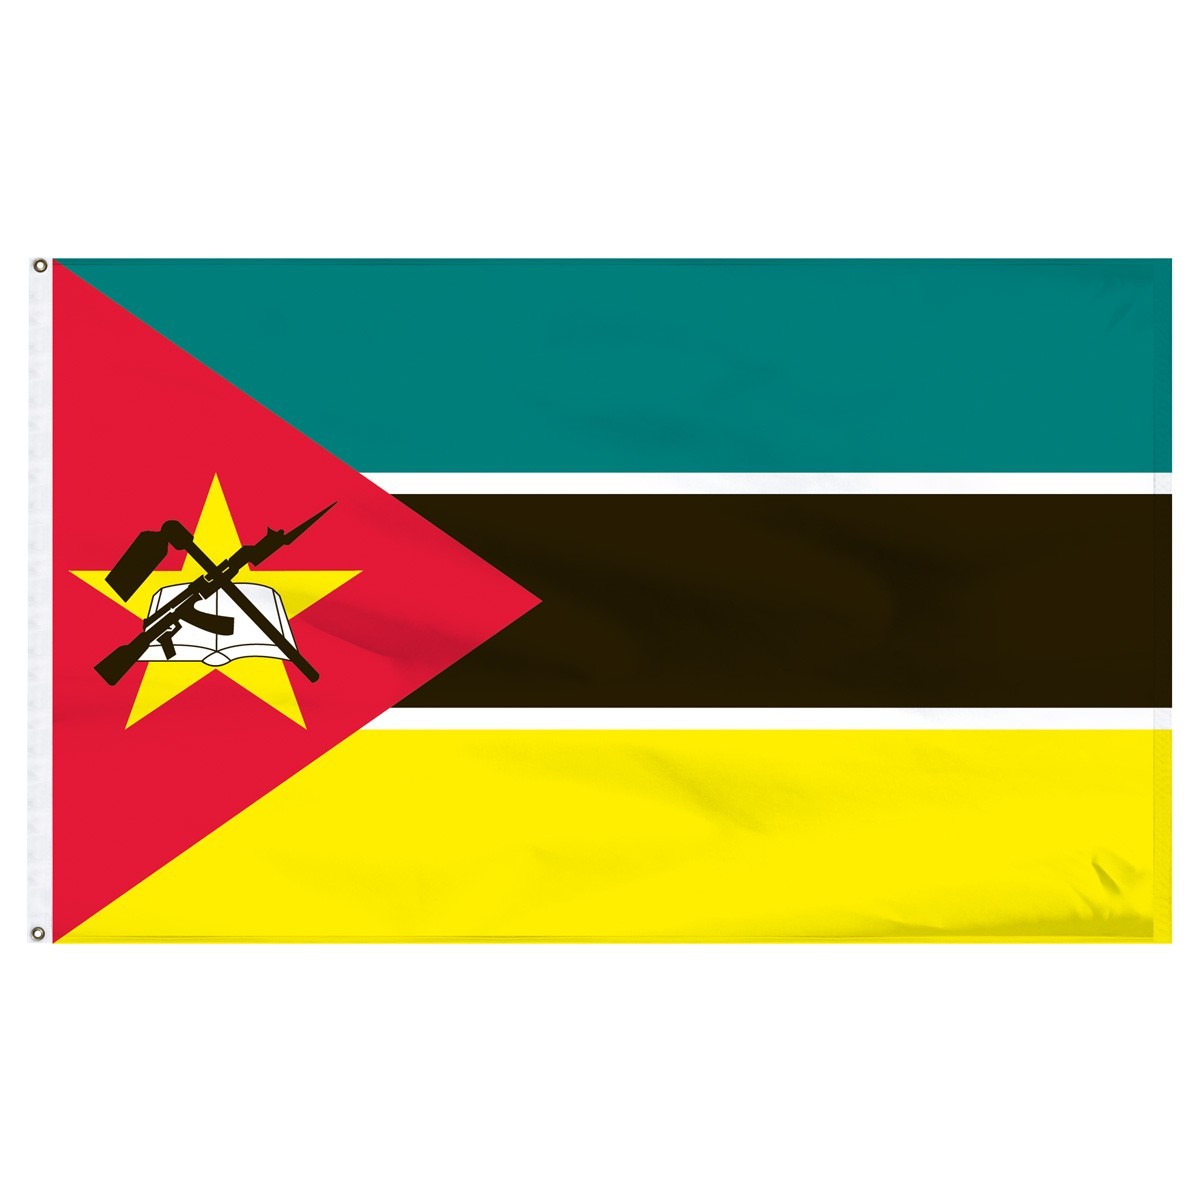 Mozambique 4' x 6' Outdoor Nylon Flag